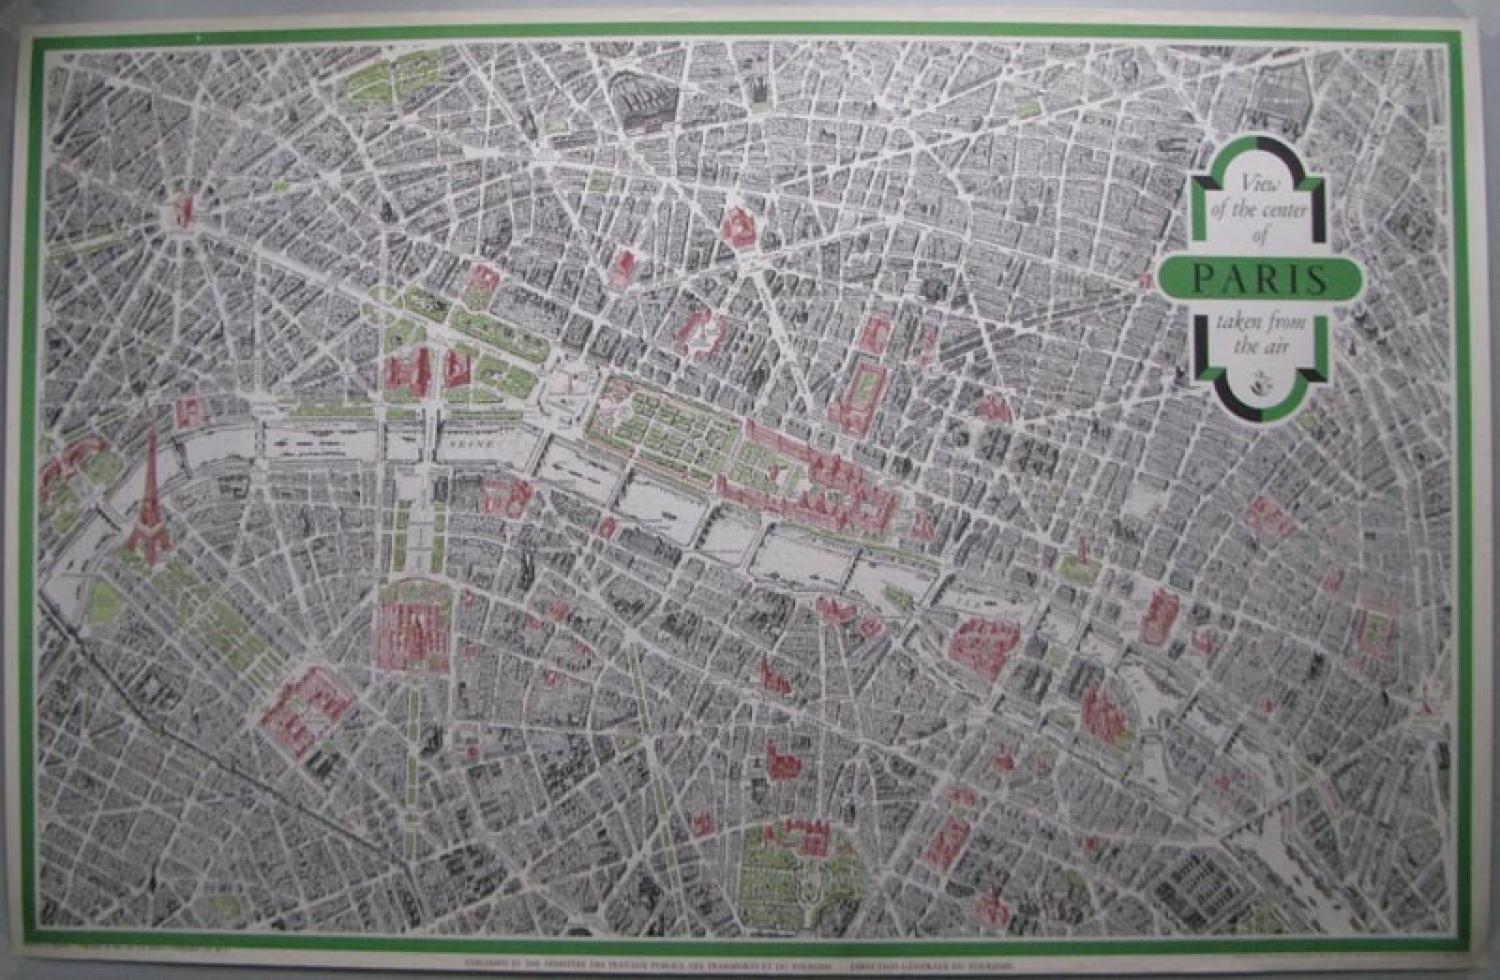 Blondel La Rougery - View the Center of Paris